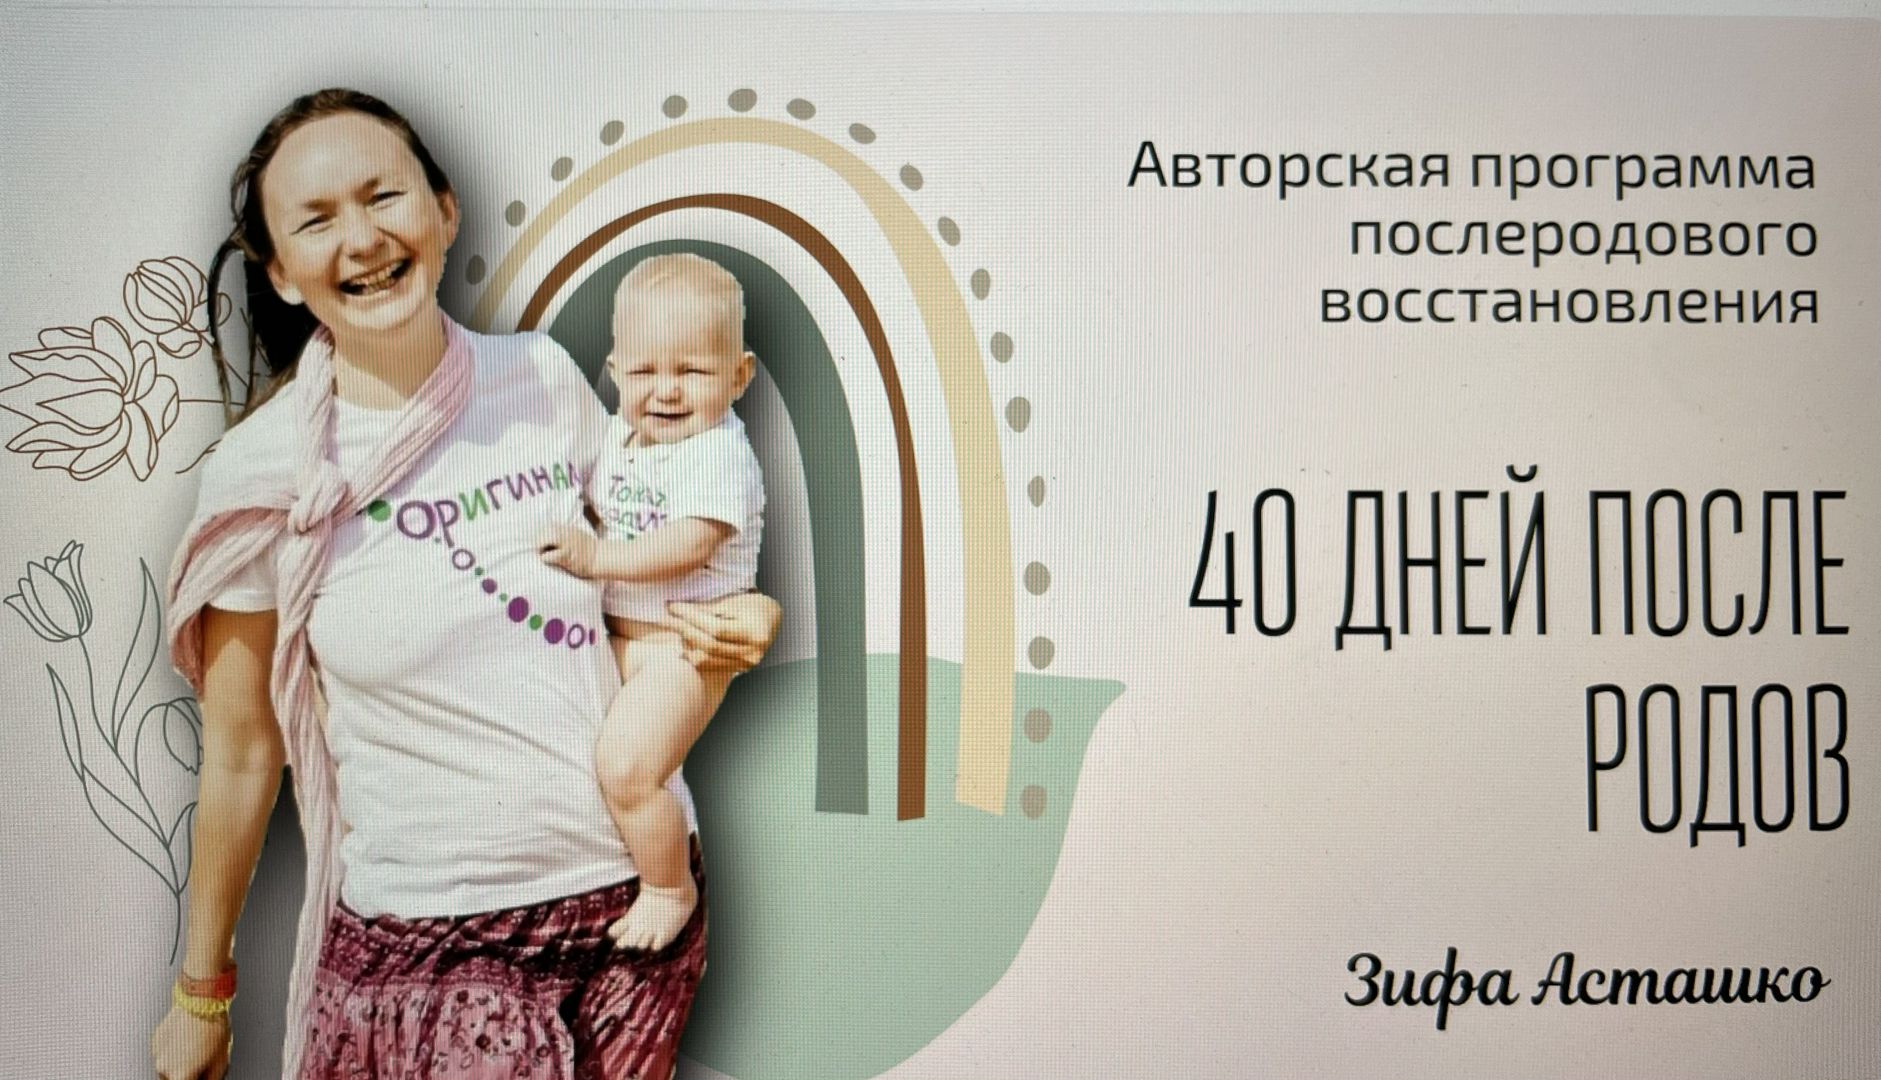 Авторская программа послеродового восстановления Зифы Асташко "40 дней после родов"